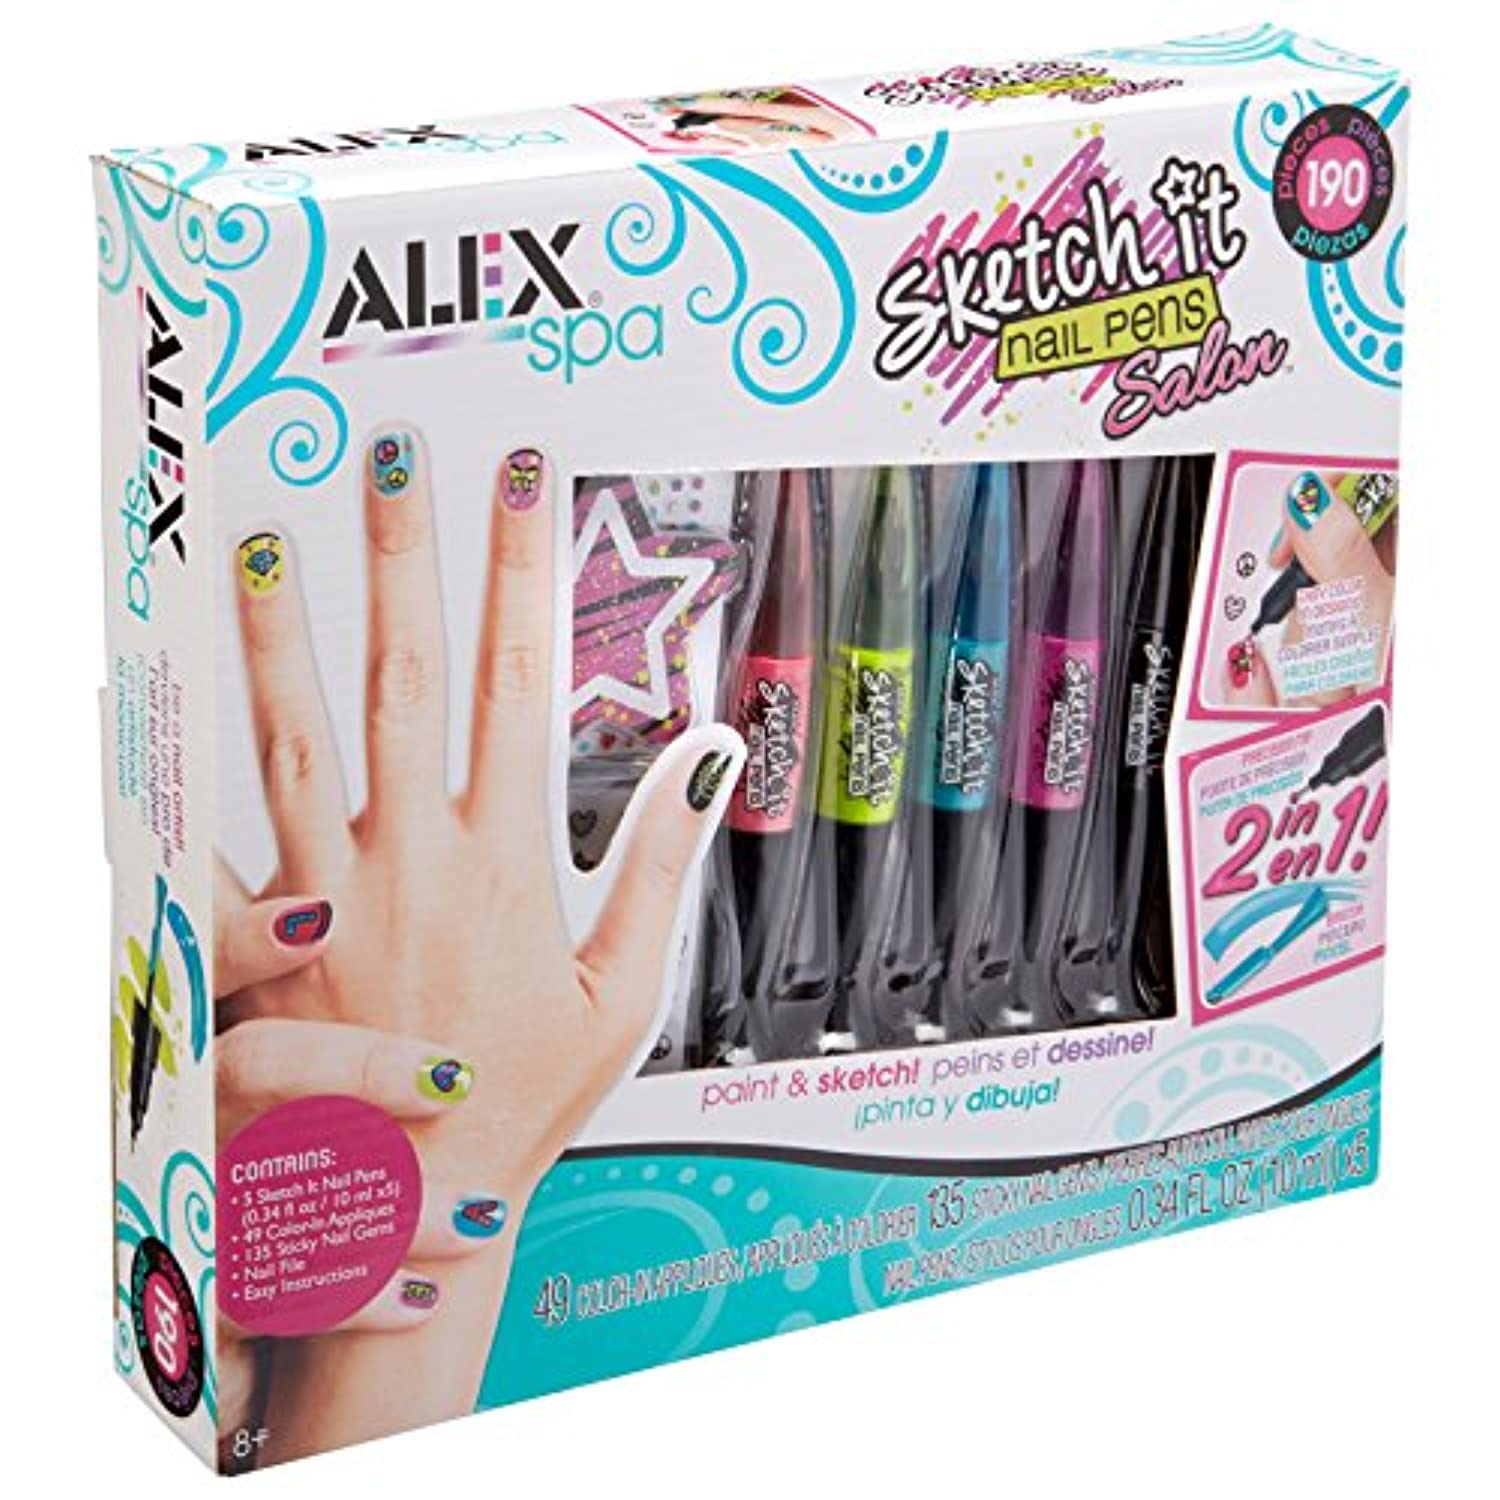 ALEX Toys Sketch It Nail Pens Salon Girls Fashion Activity